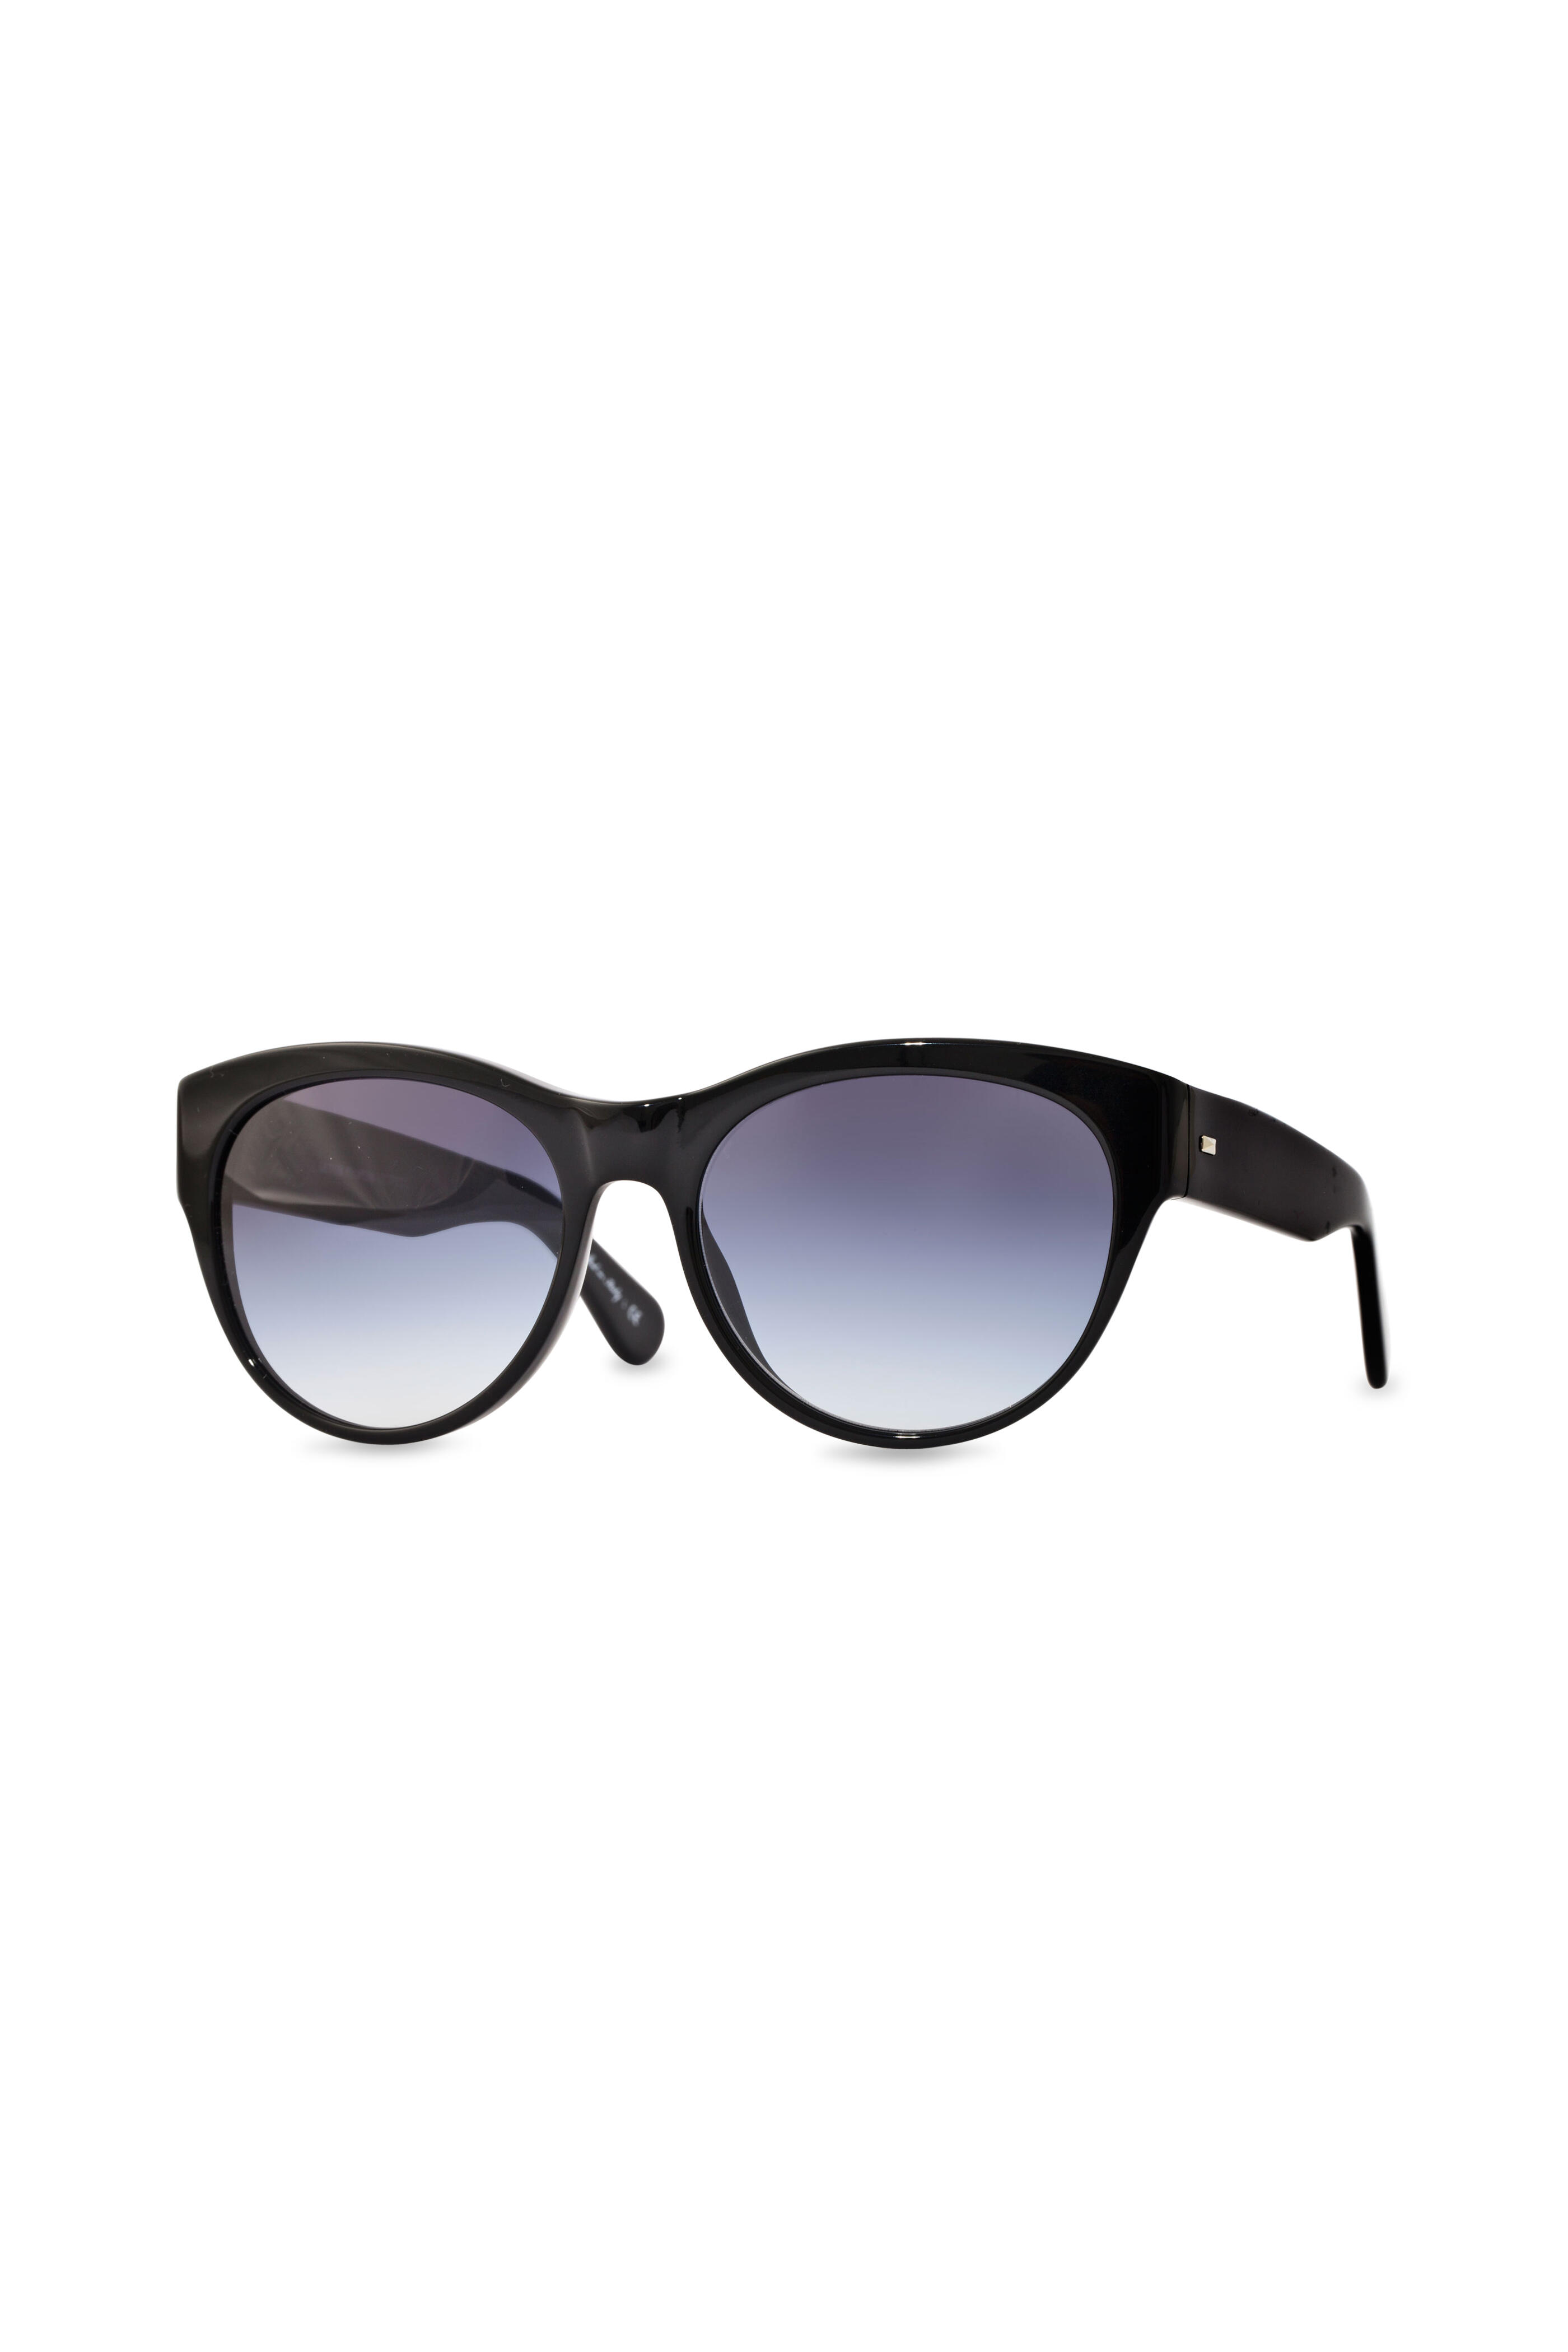 Oliver Peoples - Mande Matte Black Cateye Sunglasses